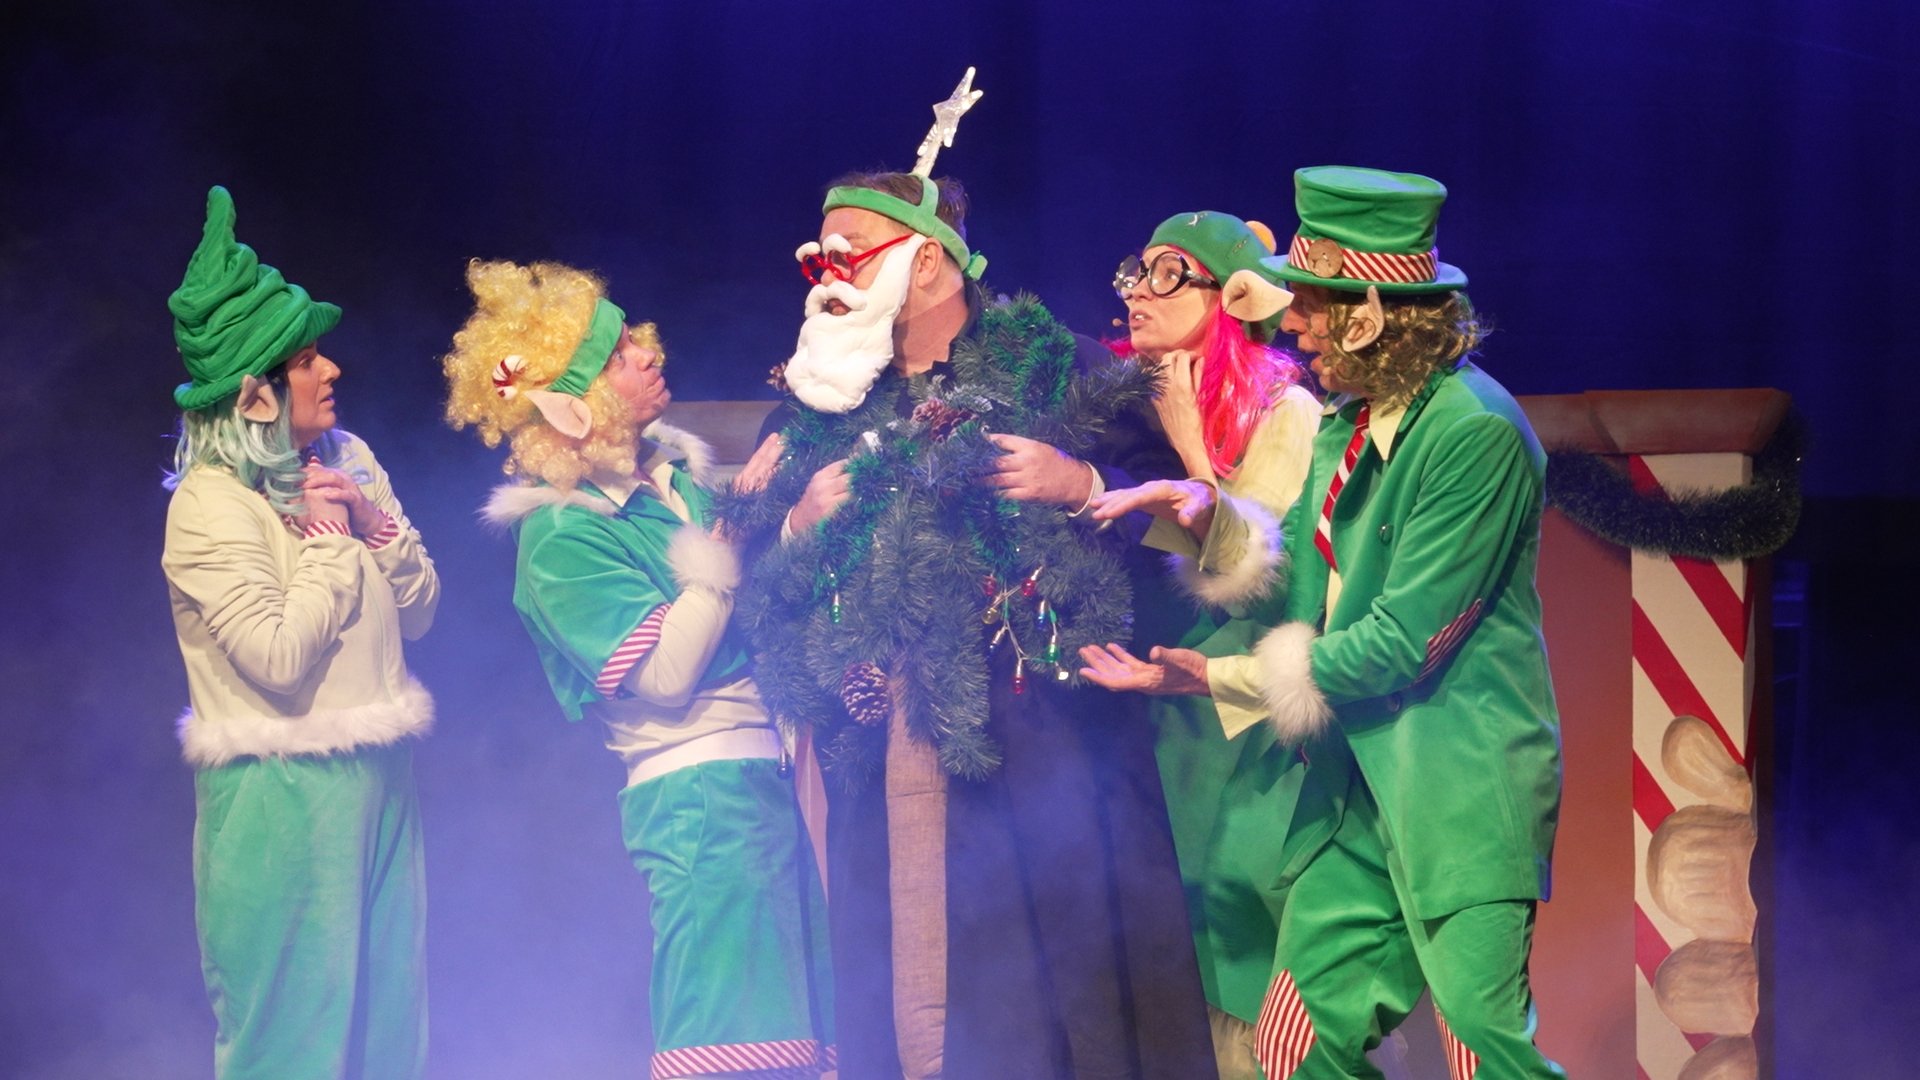 Spektakl w Teatrze Animacji. Dzień przed Wigilią Mikołaj traci pamięć. Na ratunek ruszają elfy i inne fantastyczne postaci.